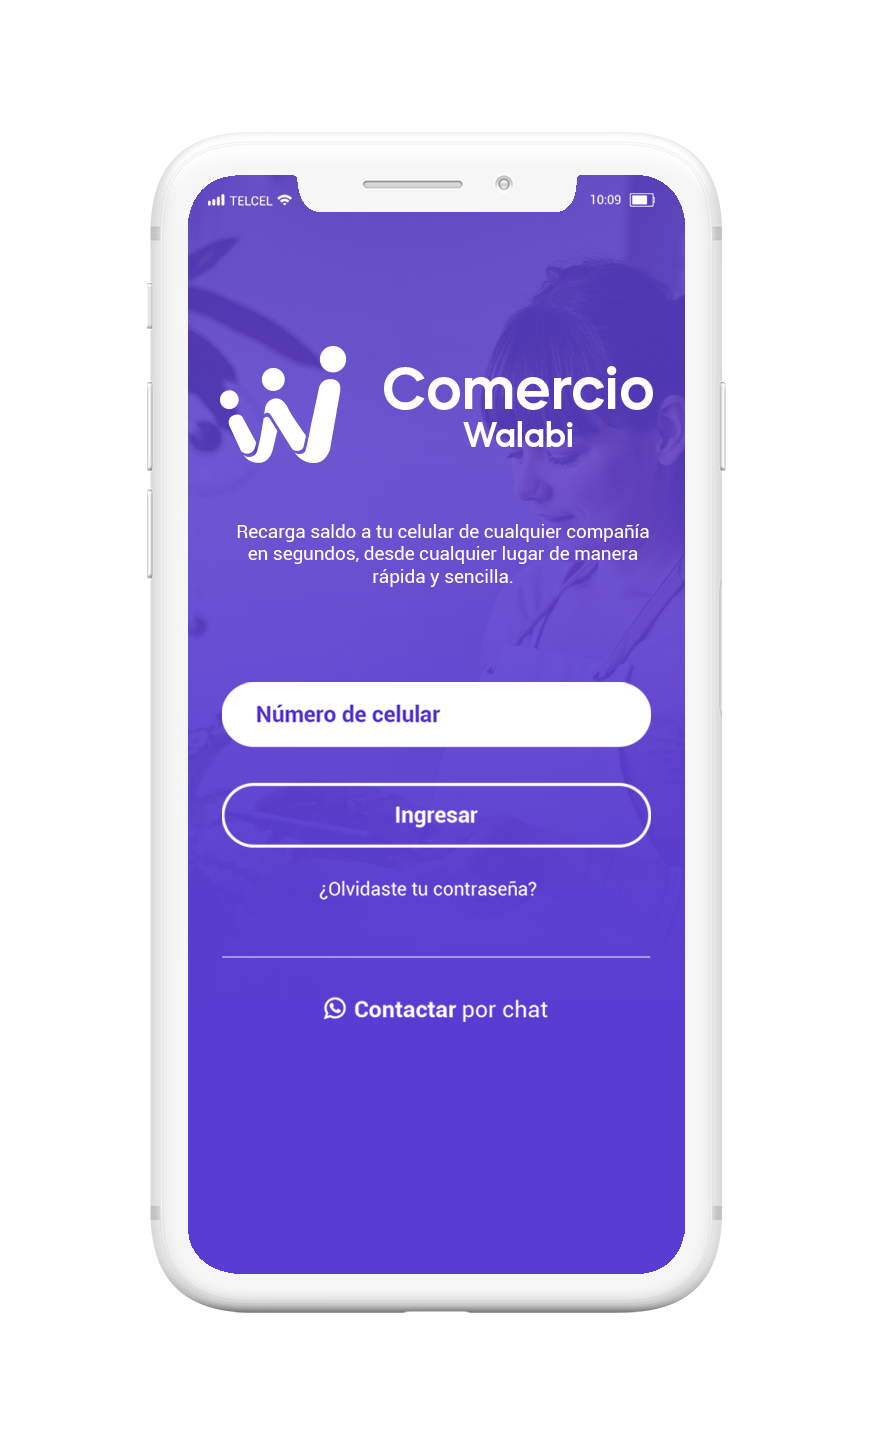 Walabi comercio app inicio